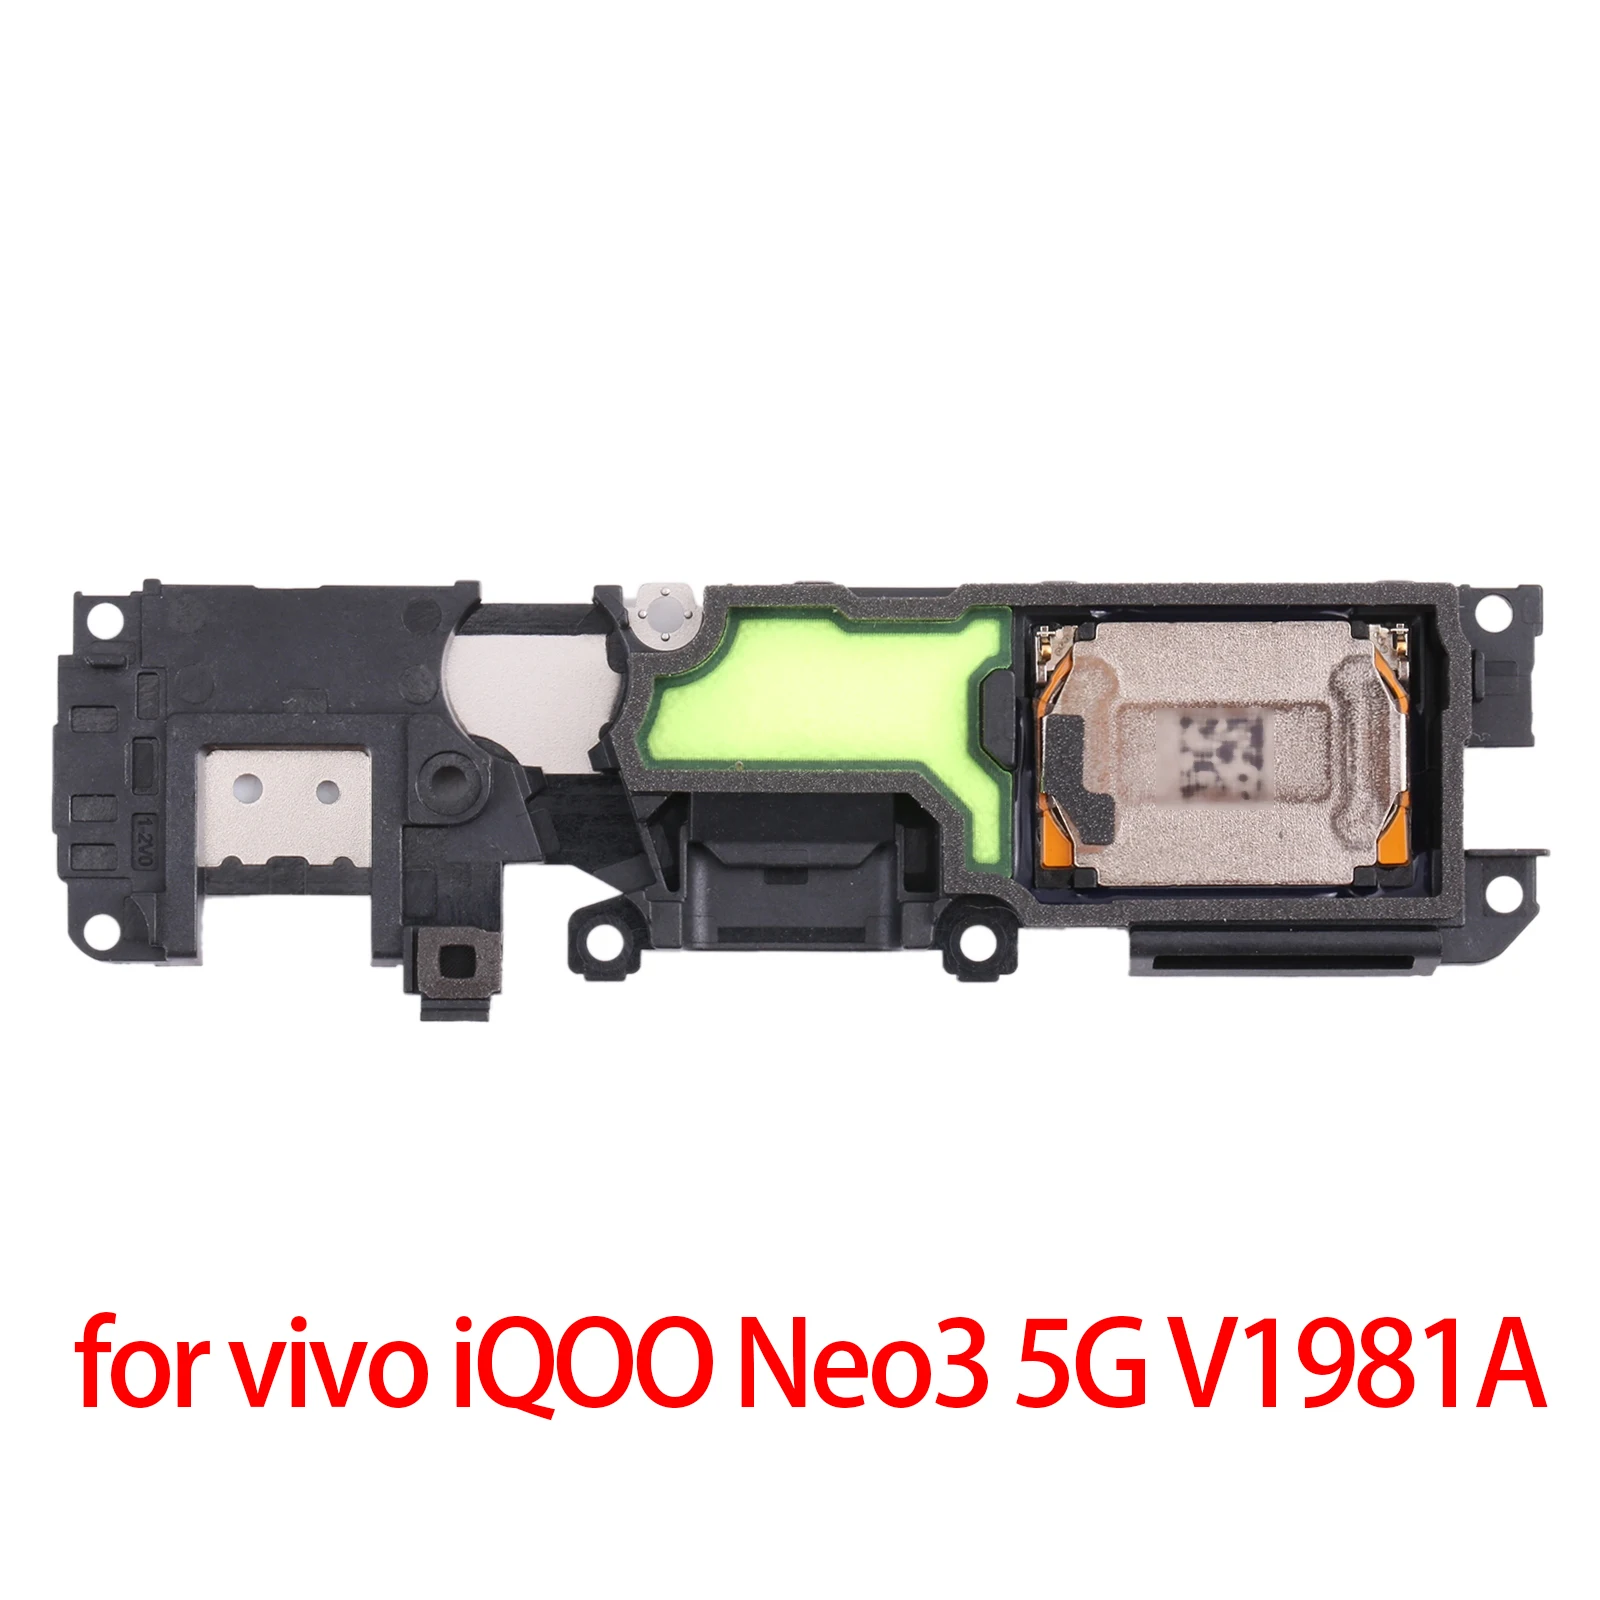 

for vivo iQOO Neo3 5G V1981A Speaker Ringer Buzzer for vivo iQOO Neo3 5G V1981A